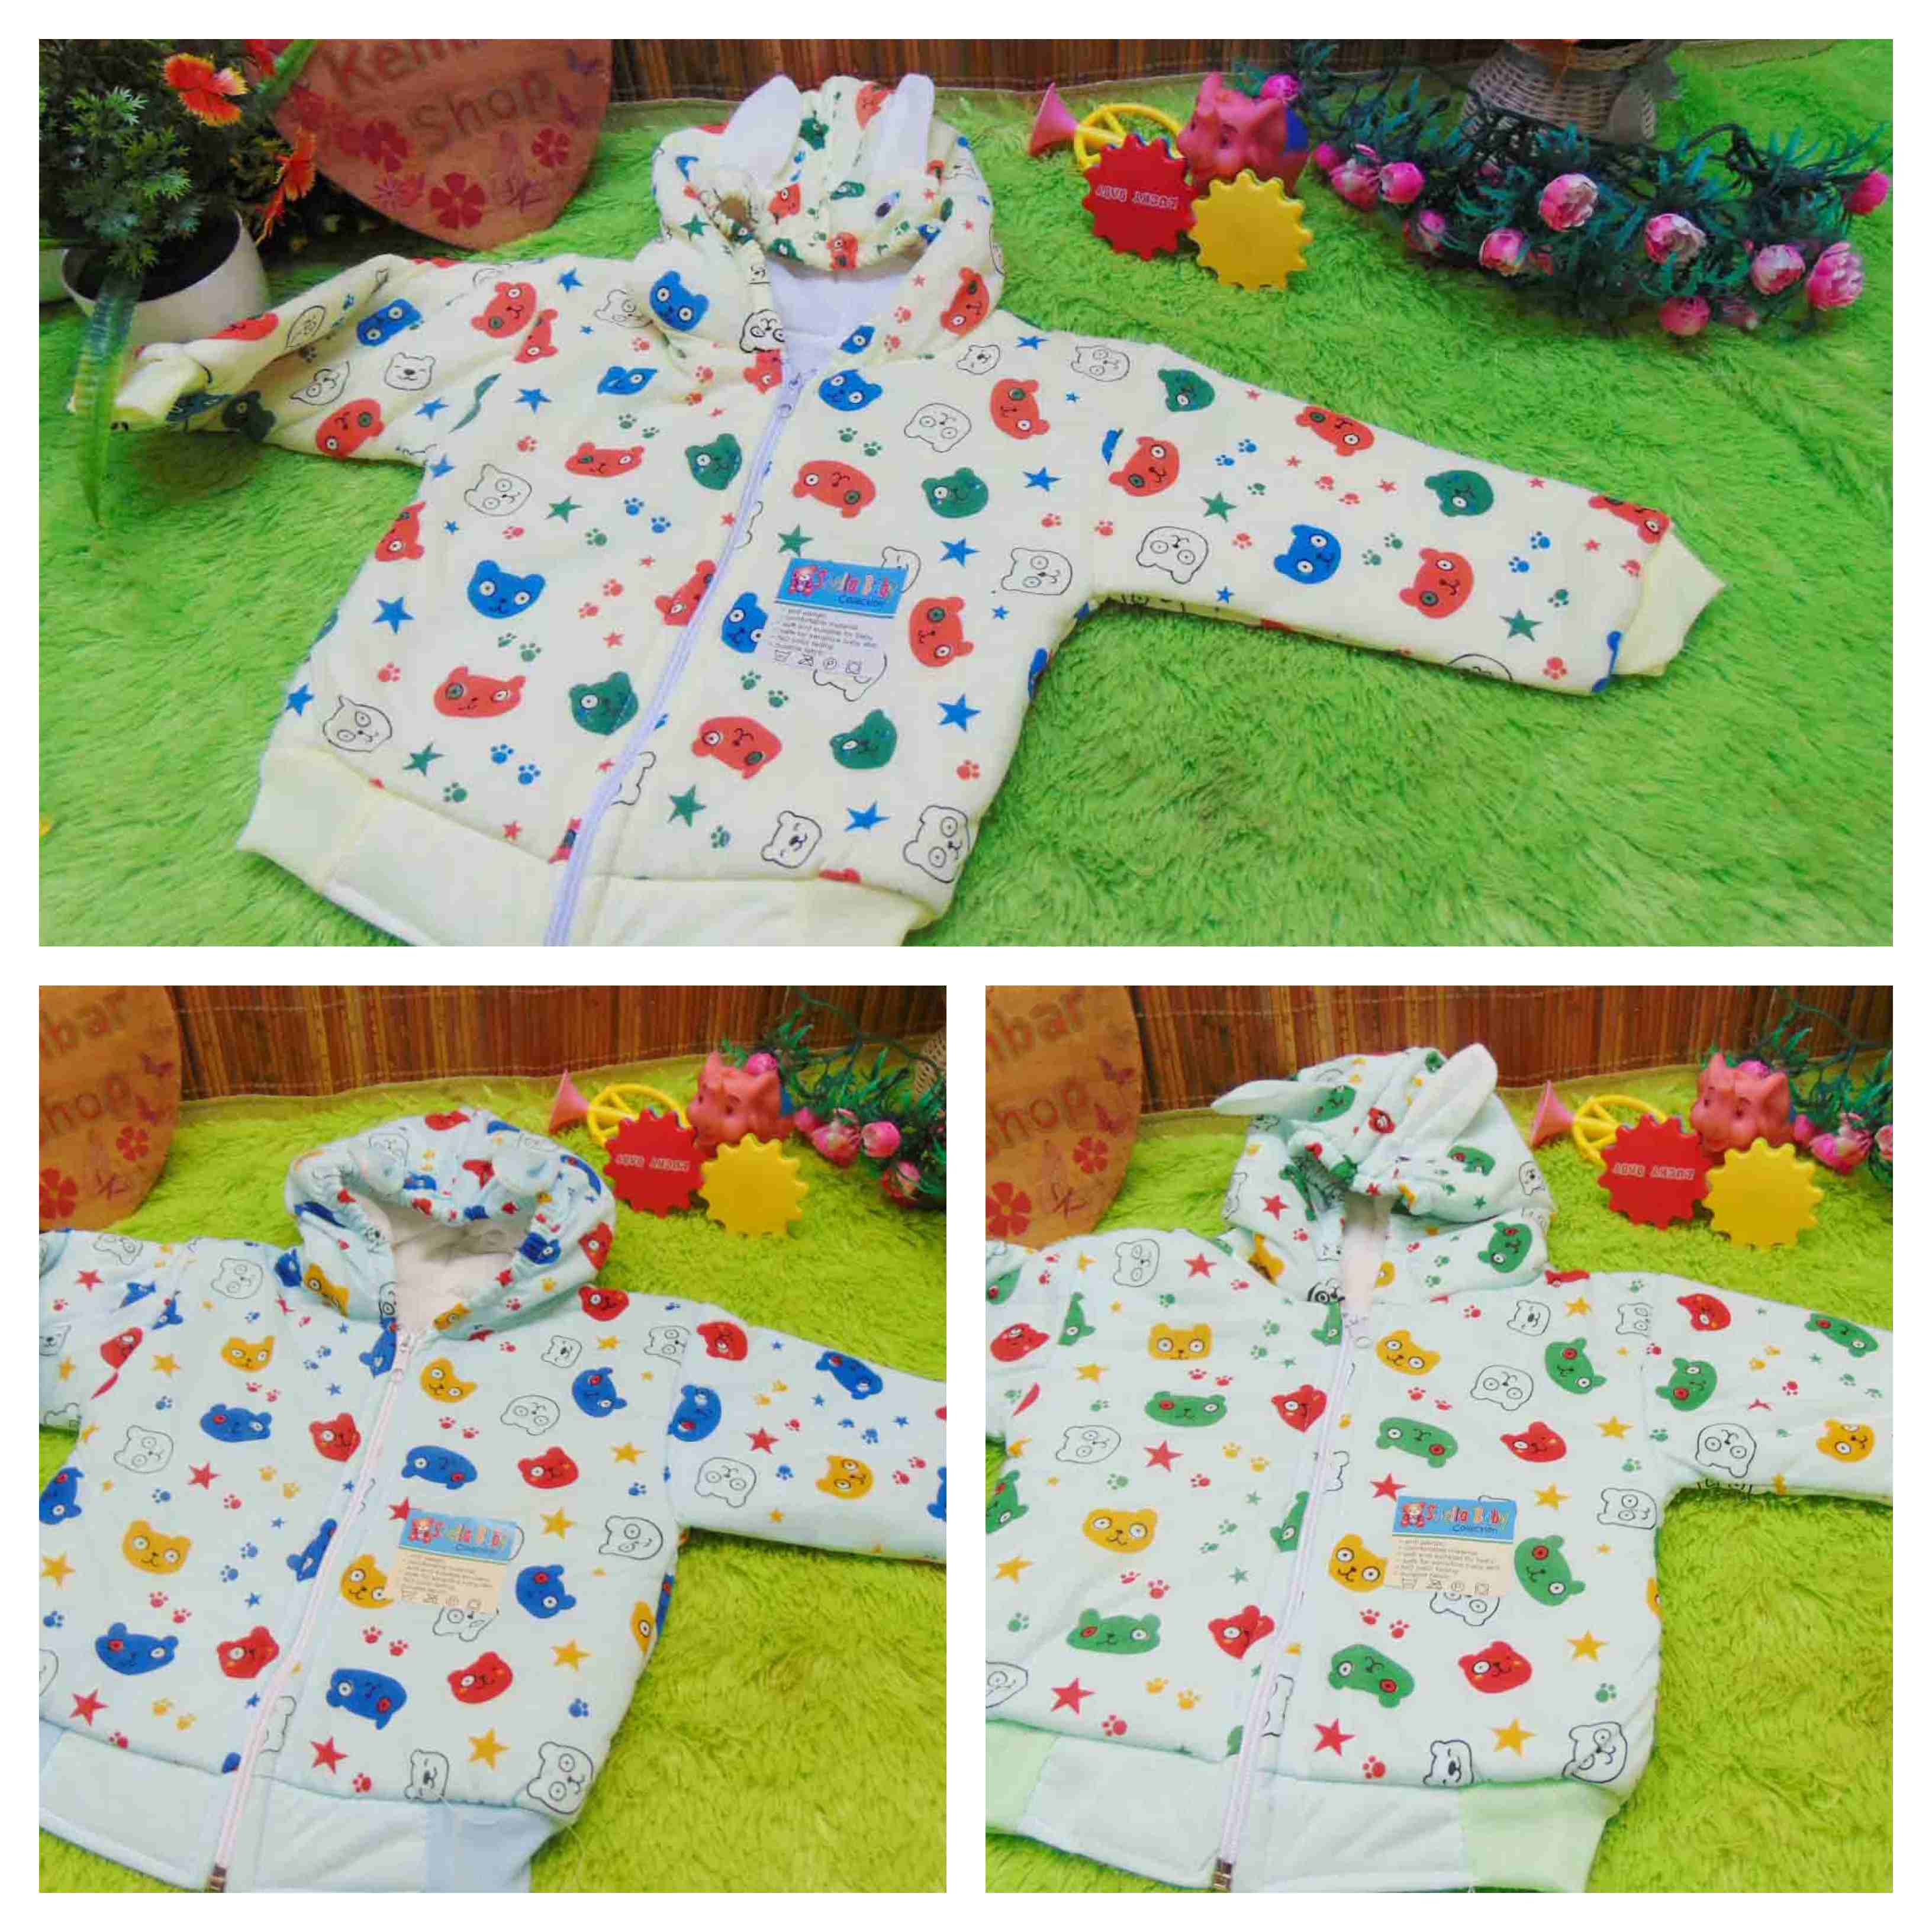 FREE KARTU UCAPAN paket kado lahiran bayi baby gift set box jaket plus boneka motif Baby Bear Beruang Aneka warna (4)